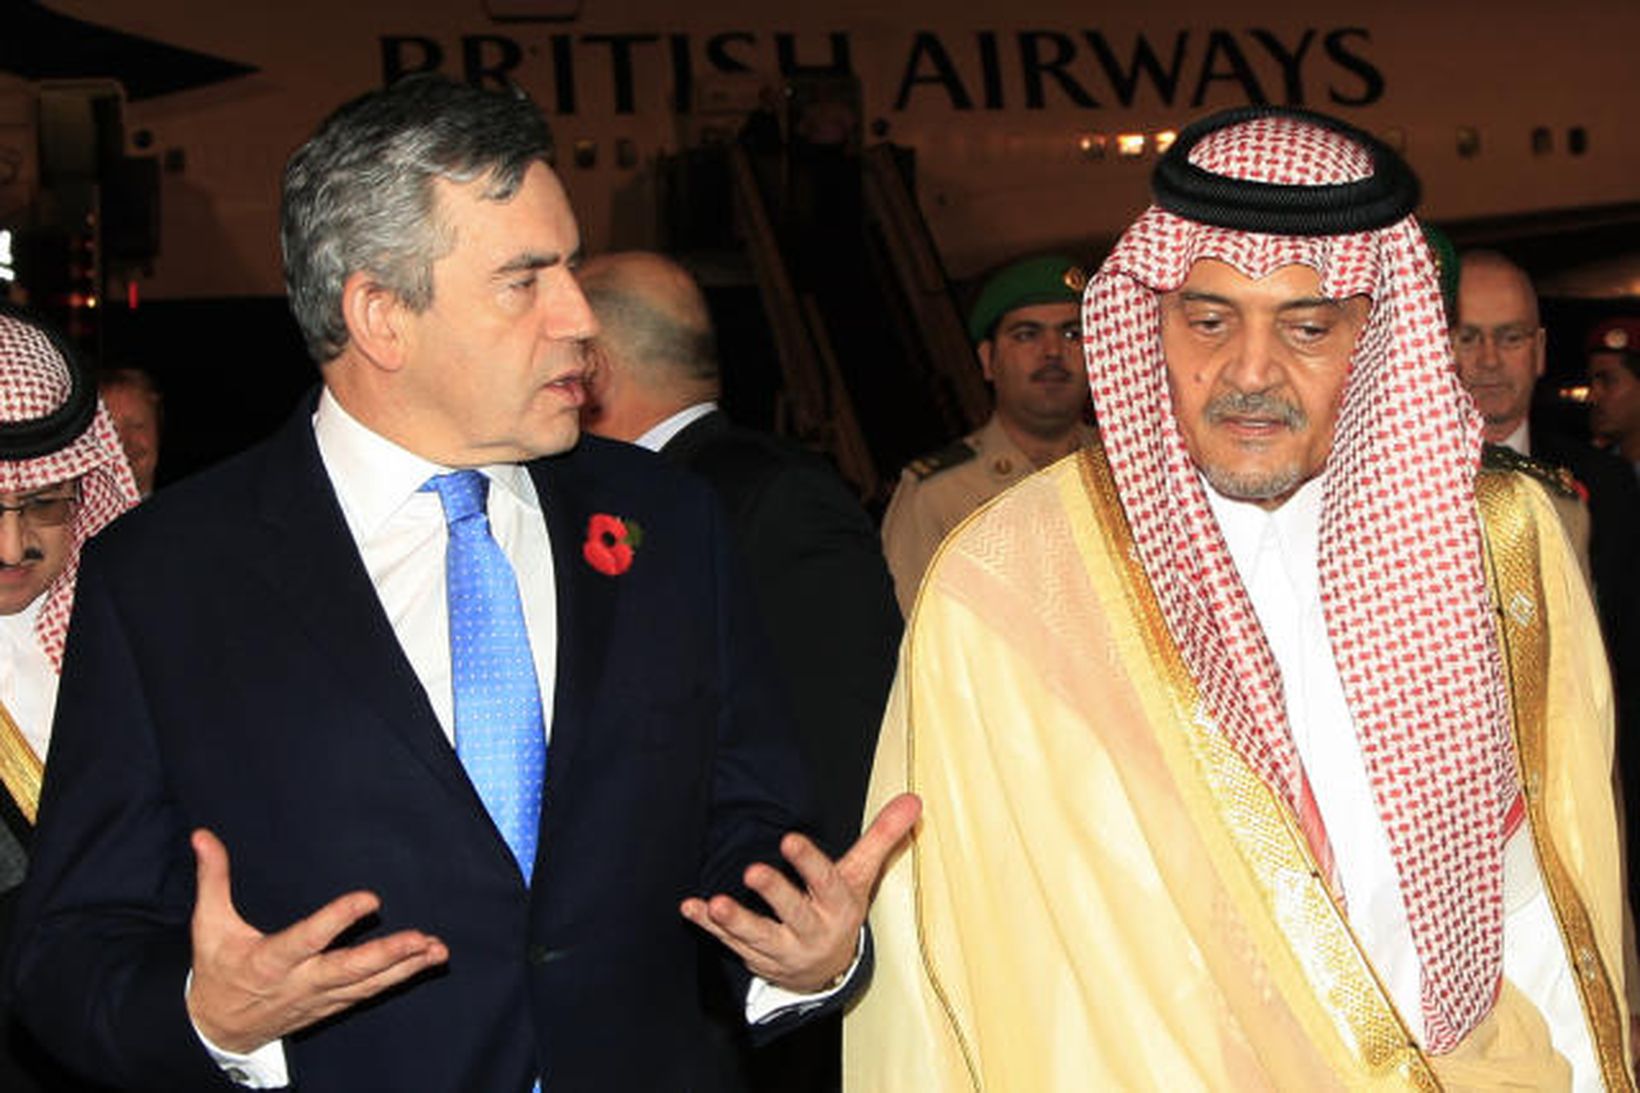 Gordon Brown, forsætisráðherra Bretlands ásamt prins al-Faisal, utanríkisráðherra Sádí-Arabíu